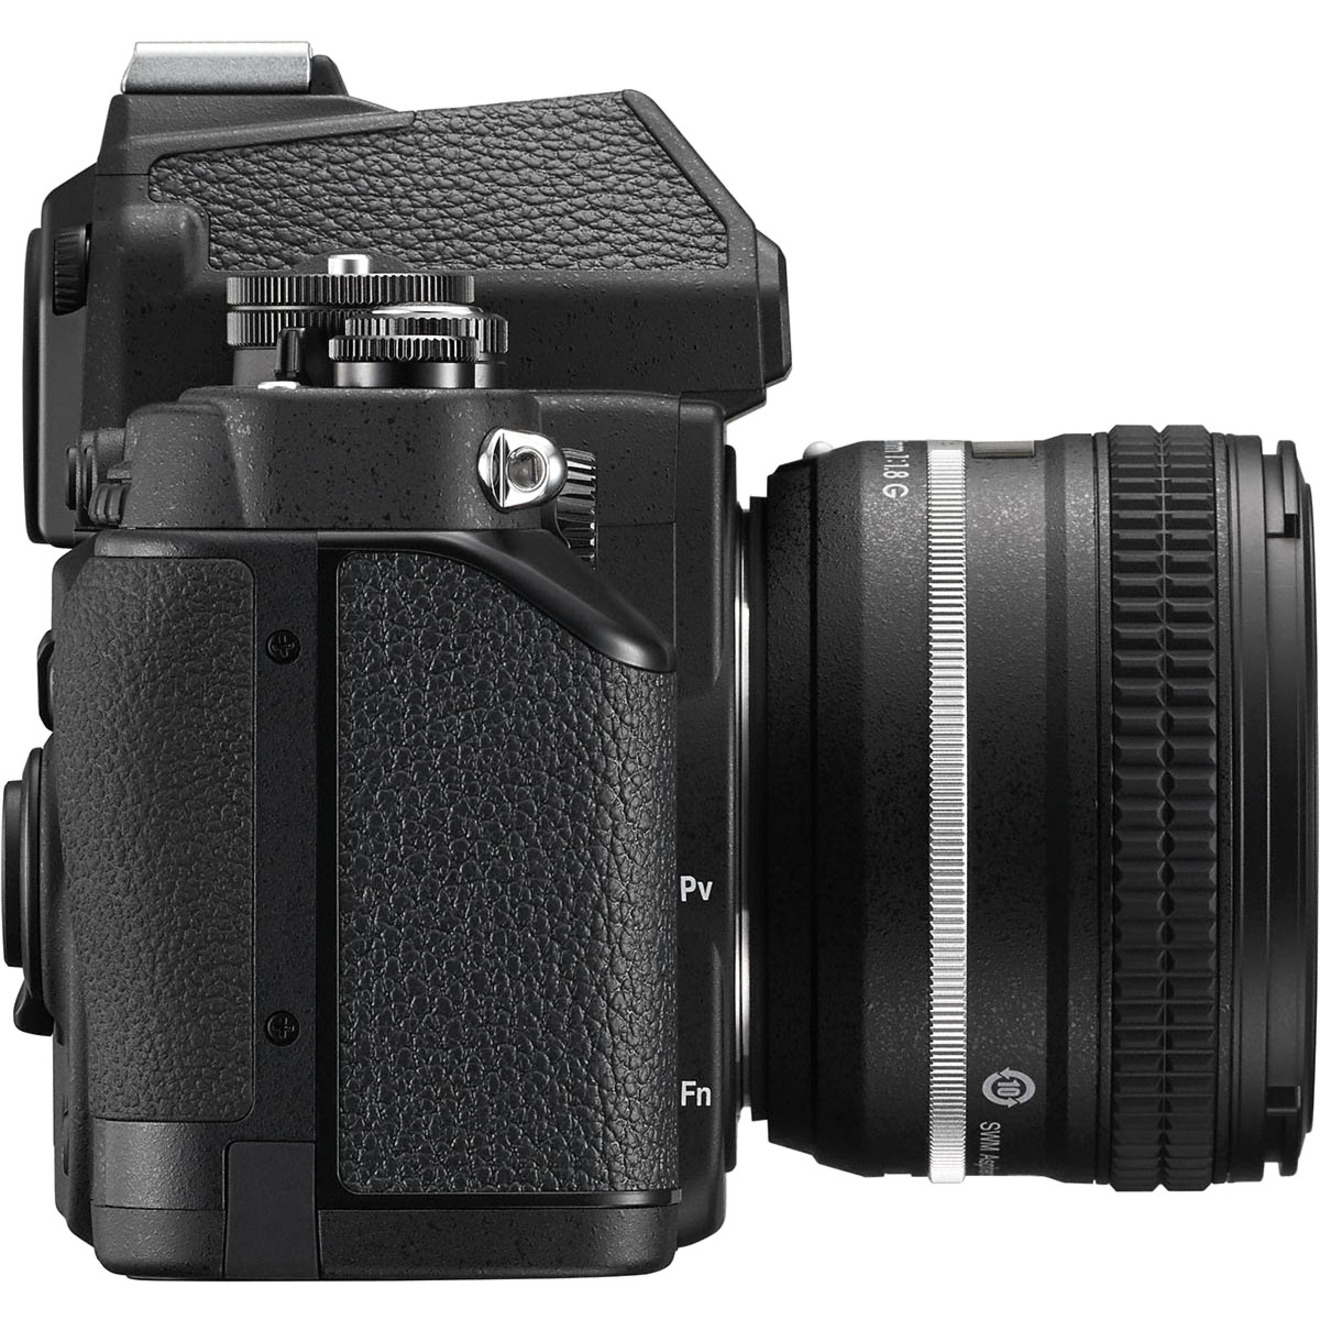 Nikon Df 16.2 Megapixel Digital SLR Camera with Lens, 1.97", Black - image 4 of 5